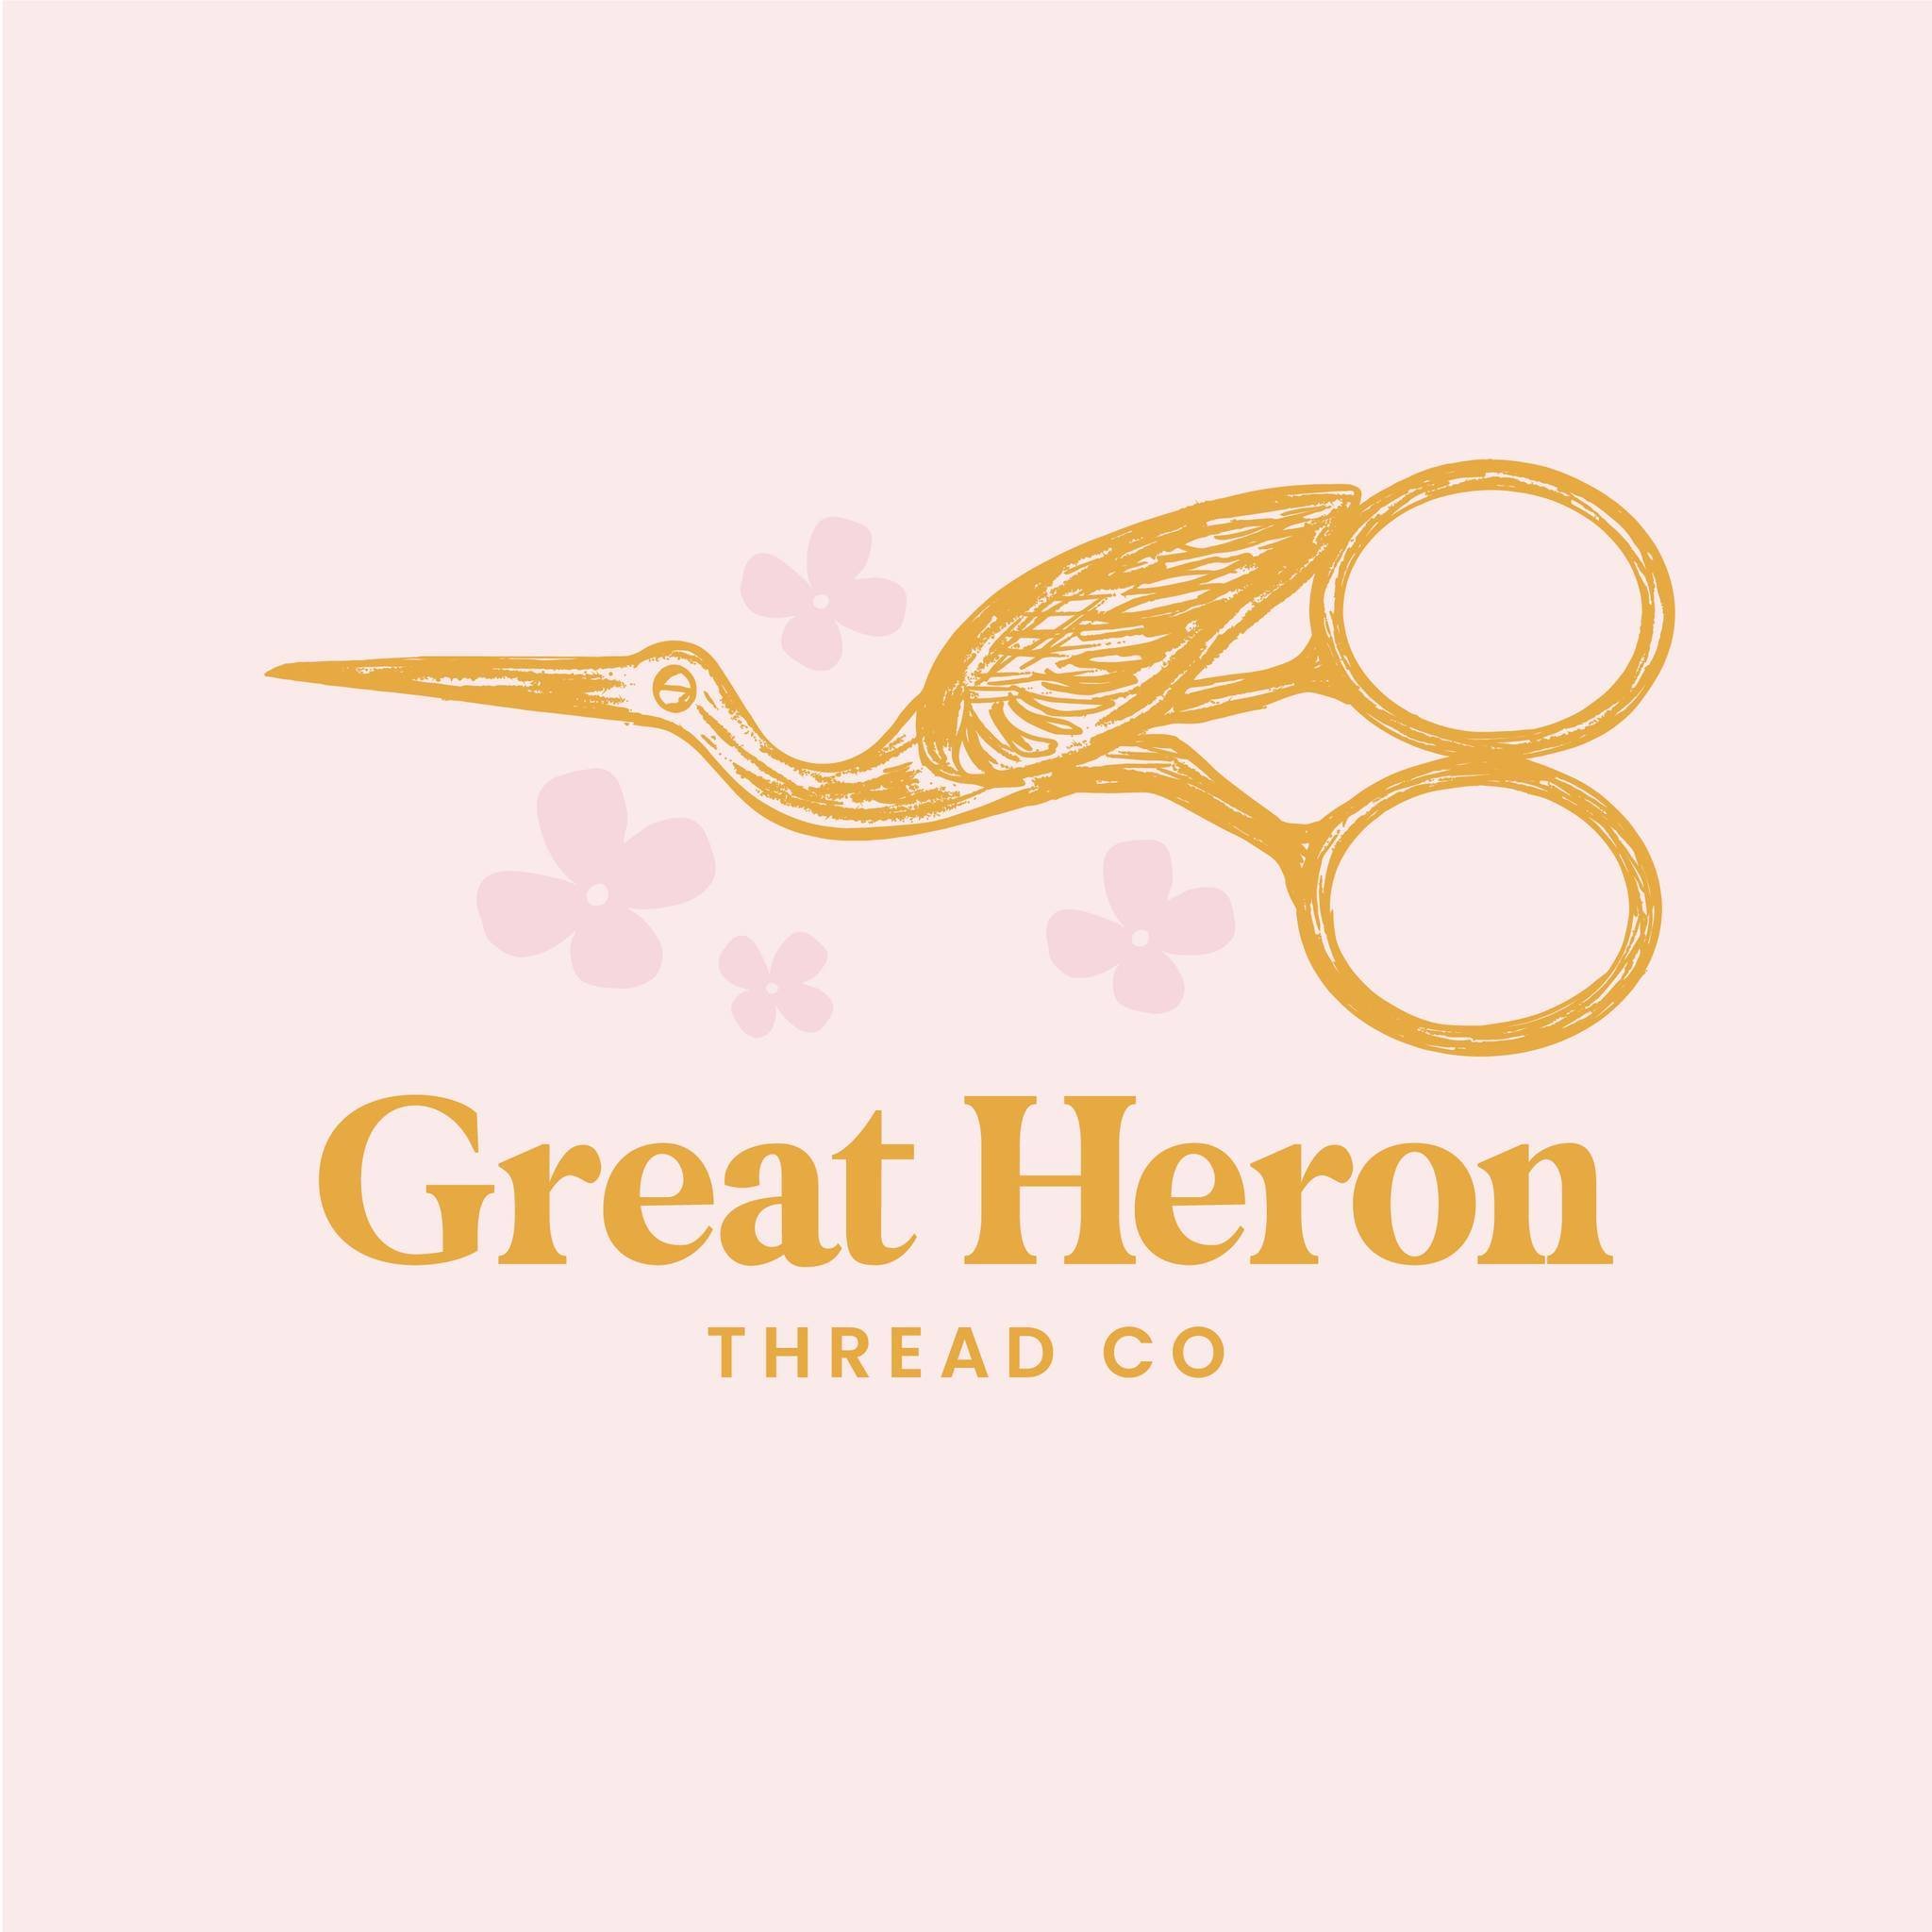 Great Heron Thread Co.